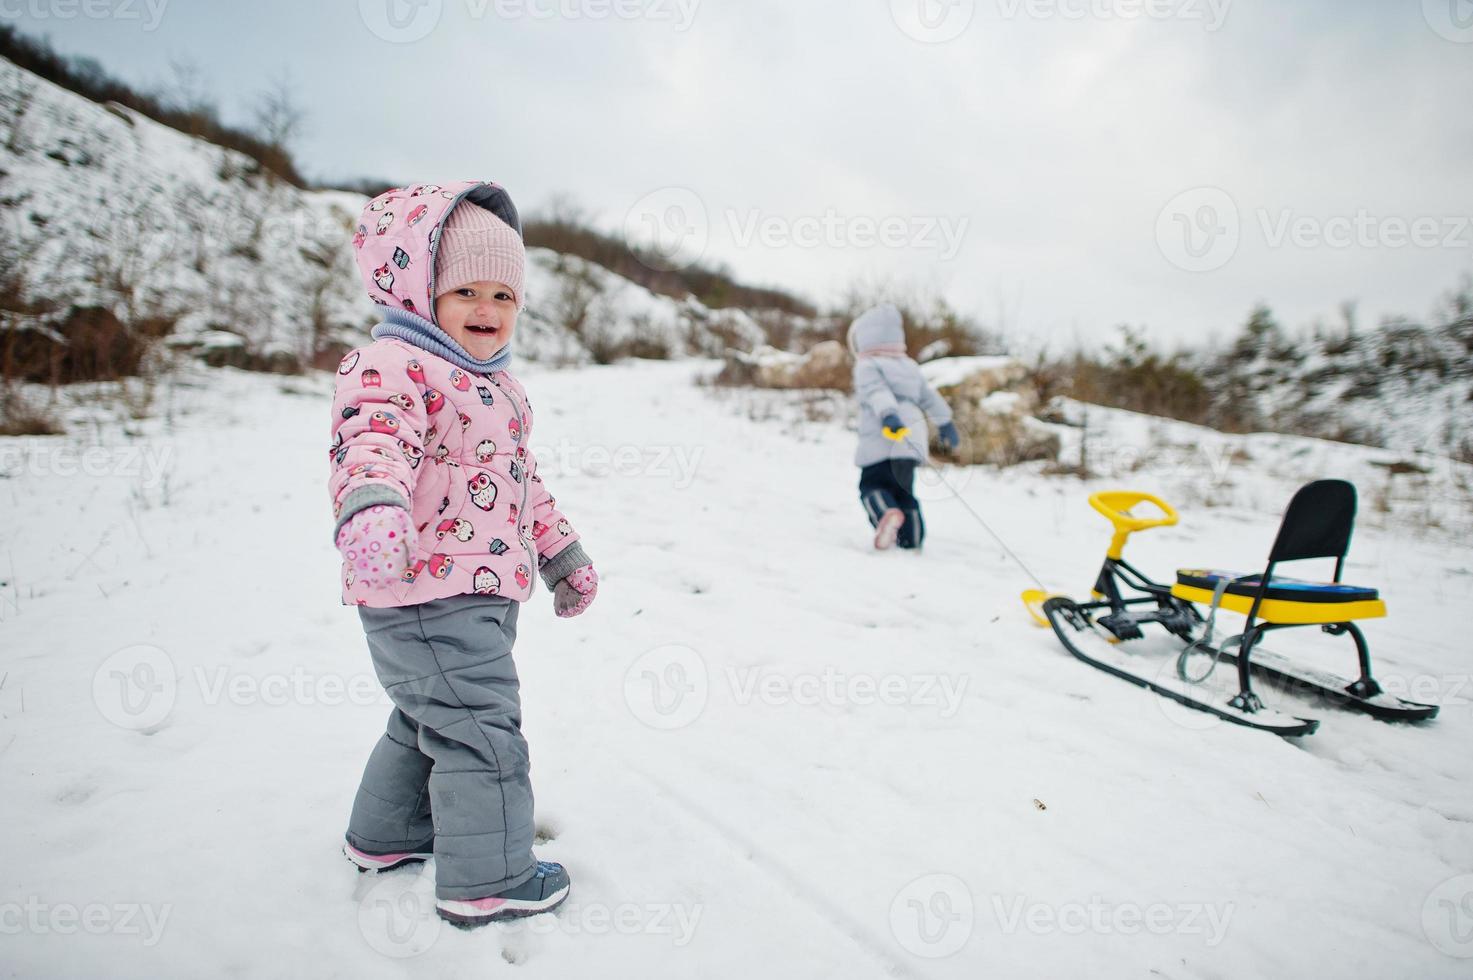 https://static.vecteezy.com/ti/fotos-kostenlos/p1/5846971-zwei-baby-madchen-geniessen-eine-schlittenfahrt-kinderschlittenfahrt-kinder-reiten-einen-schlitten-im-winter-foto.jpg